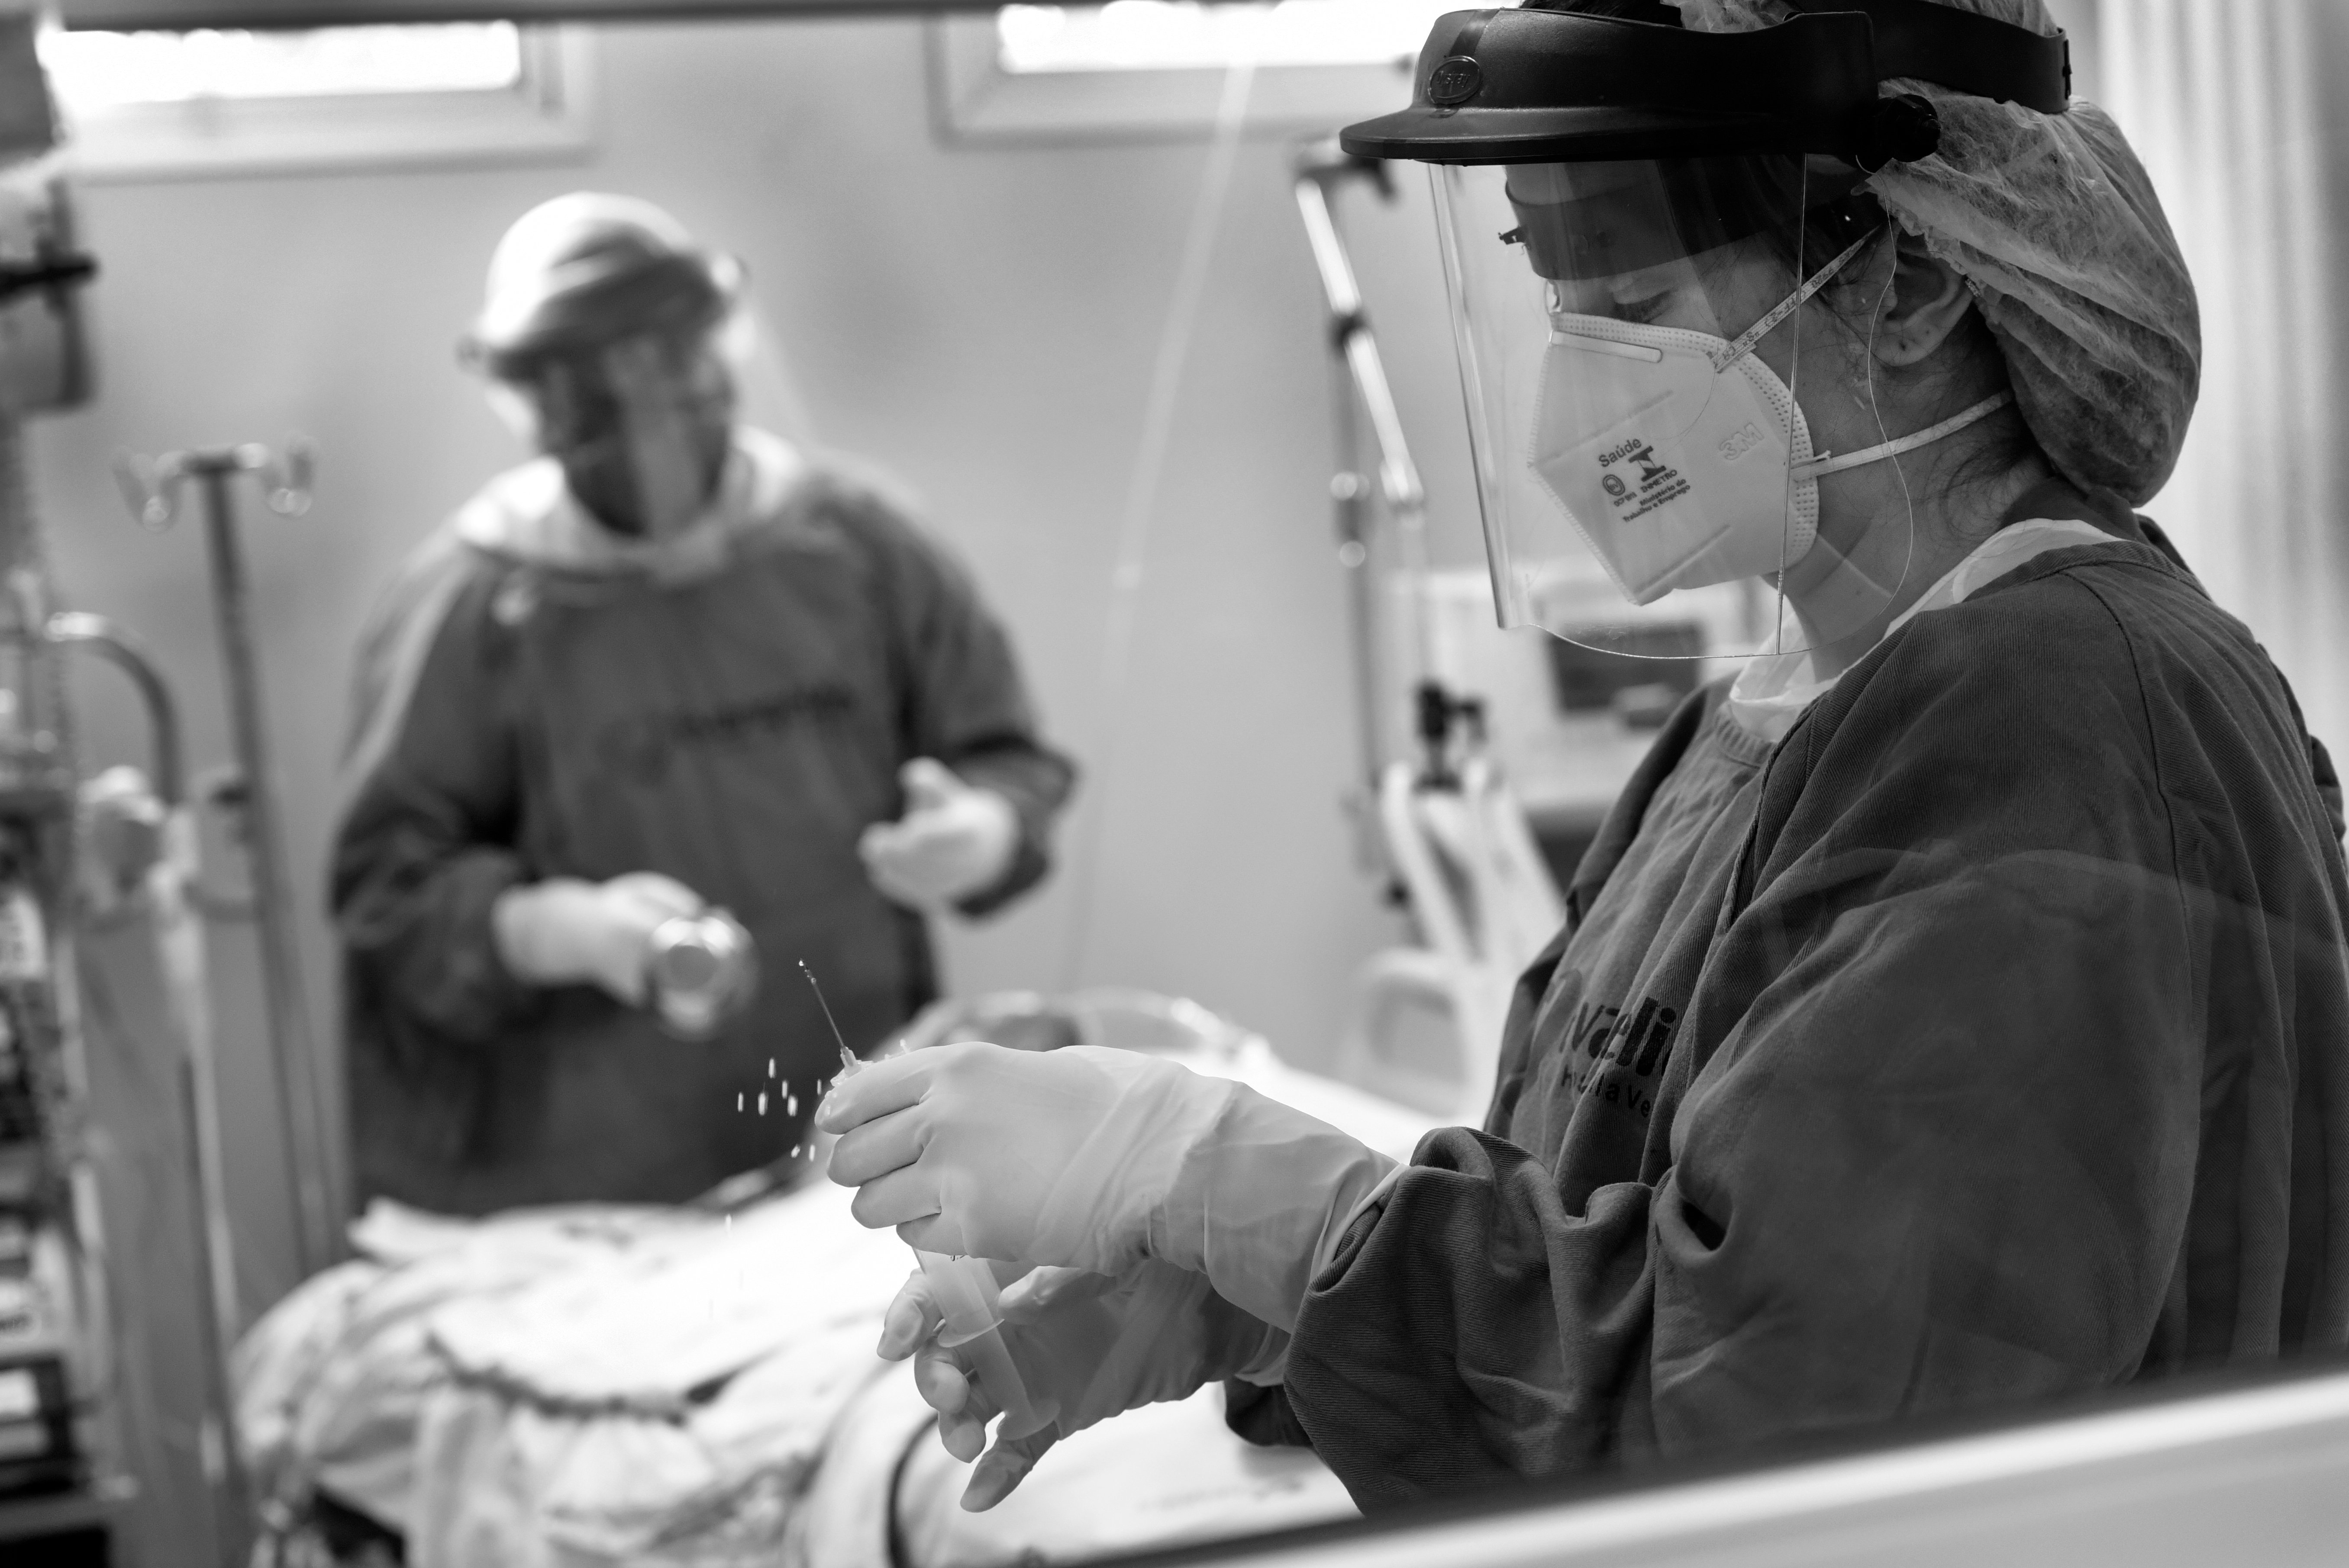 Preparando para um procedimento cirúrgico em uma paciente